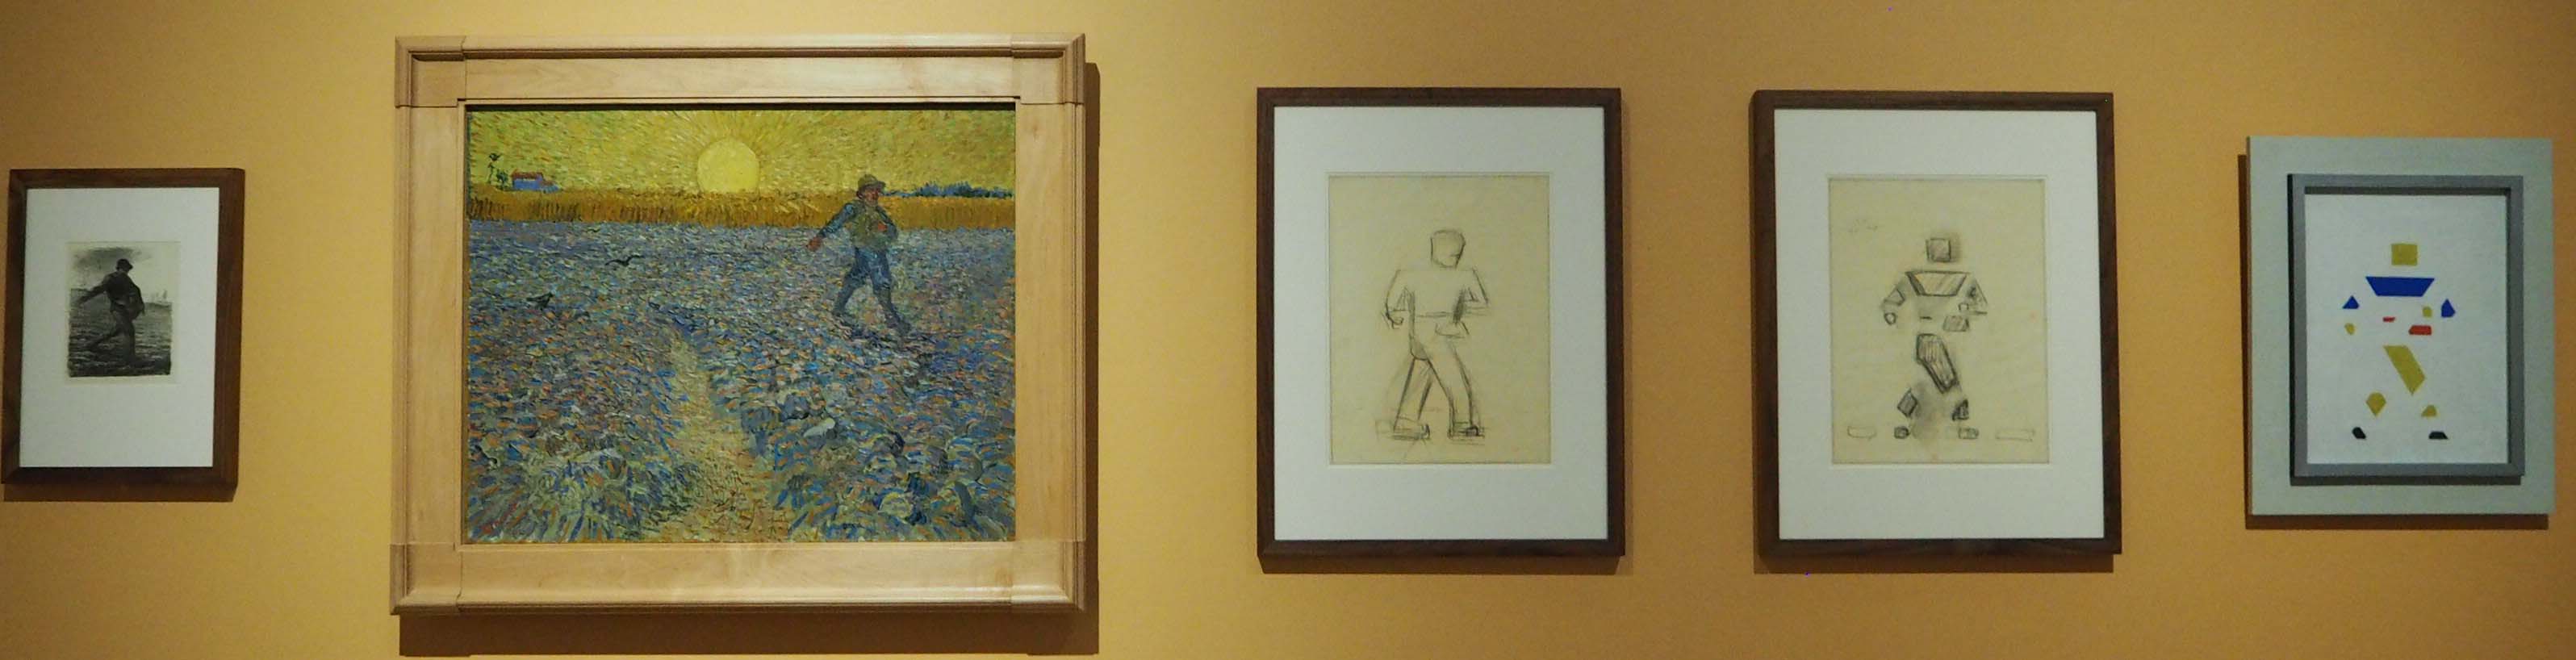 Vijf werken van de Zaaier - Millet, Van Gogh en drie maal Bart van der Leck © Wilma Lankhorst